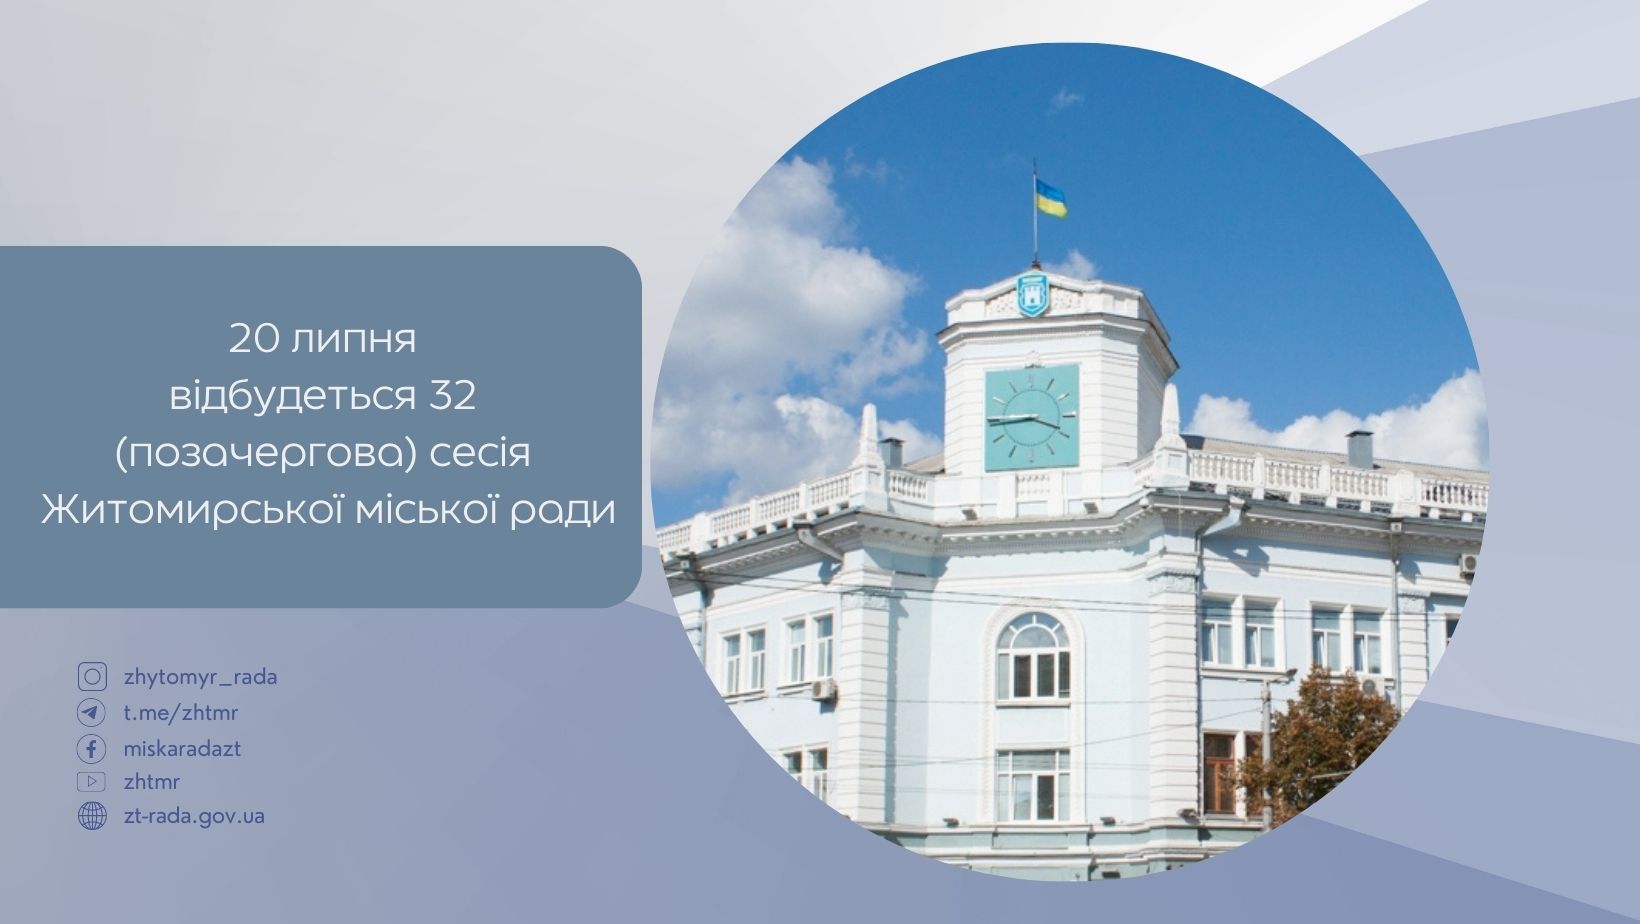 20 липня відбудеться (позачергова) 32 сесія Житомирської міської ради